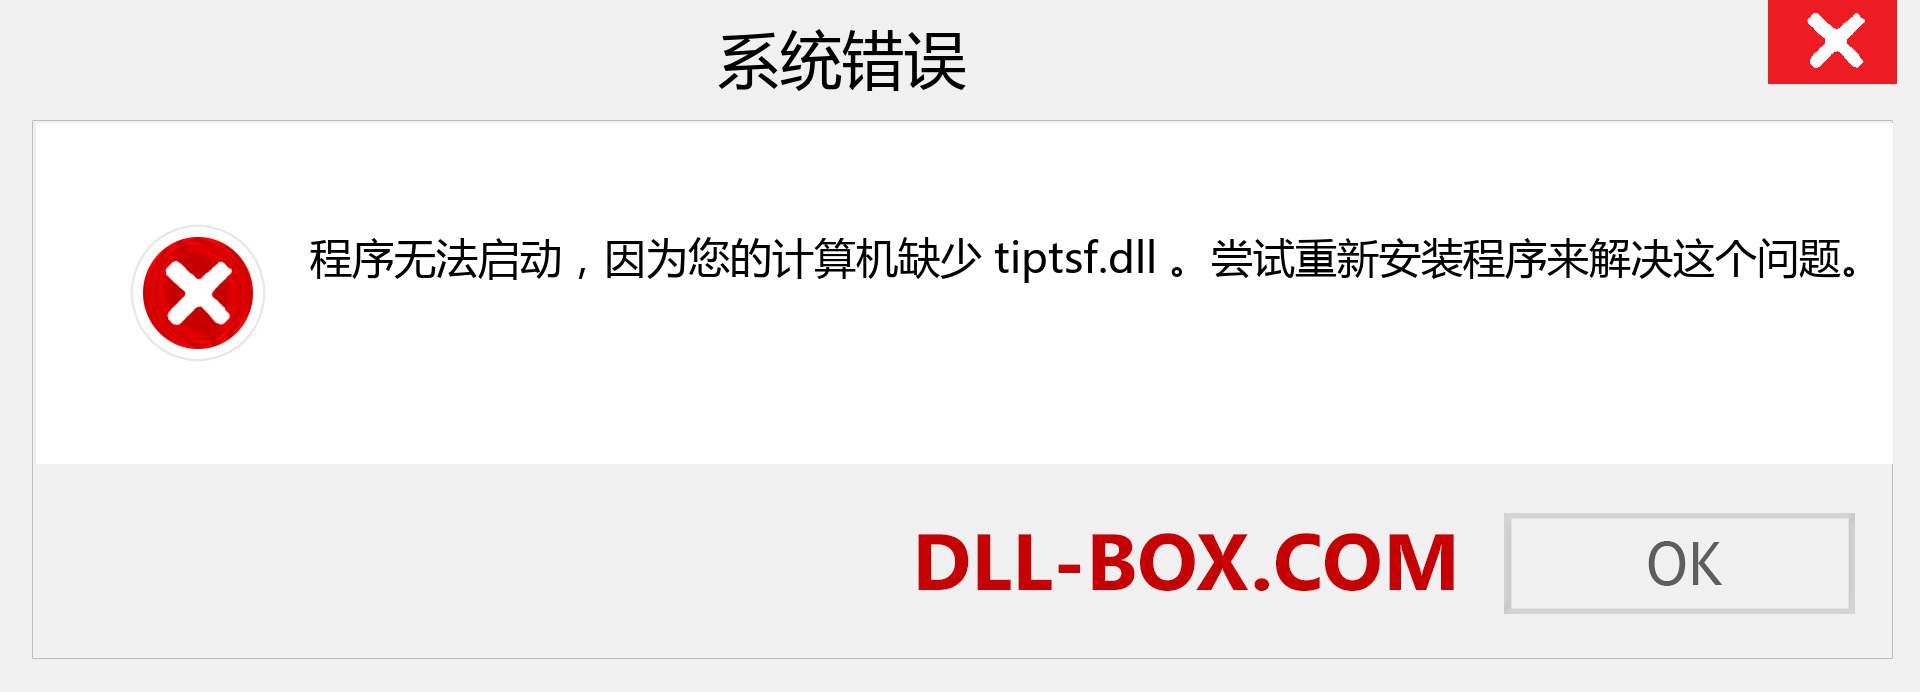 tiptsf.dll 文件丢失？。 适用于 Windows 7、8、10 的下载 - 修复 Windows、照片、图像上的 tiptsf dll 丢失错误